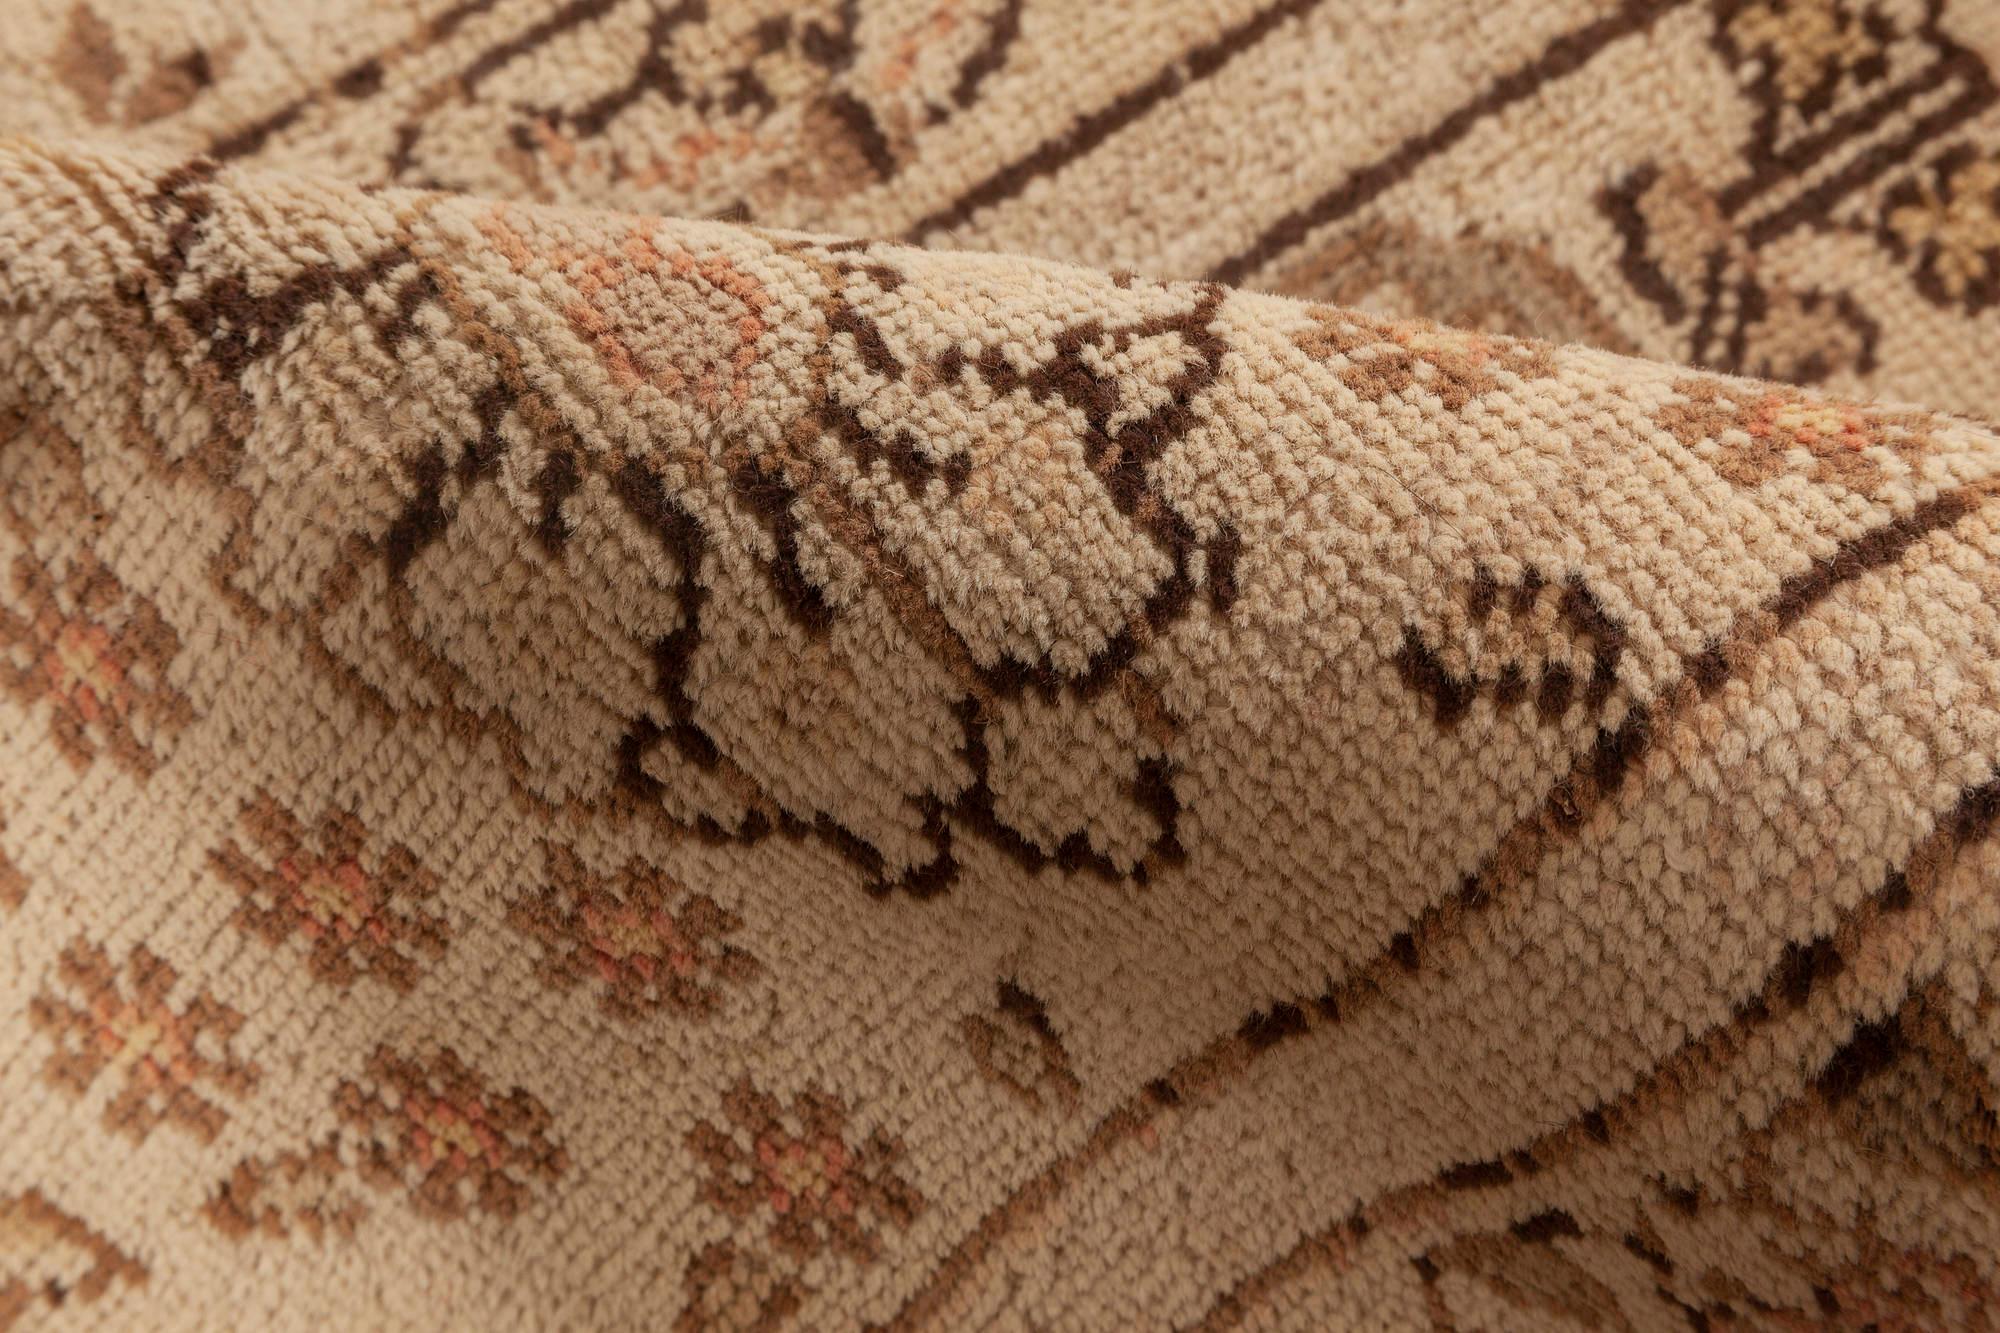 Midcentury Persian Tabriz Beige, Brown Handmade Wool Rug by Doris Leslie Blau
Size: 8'0